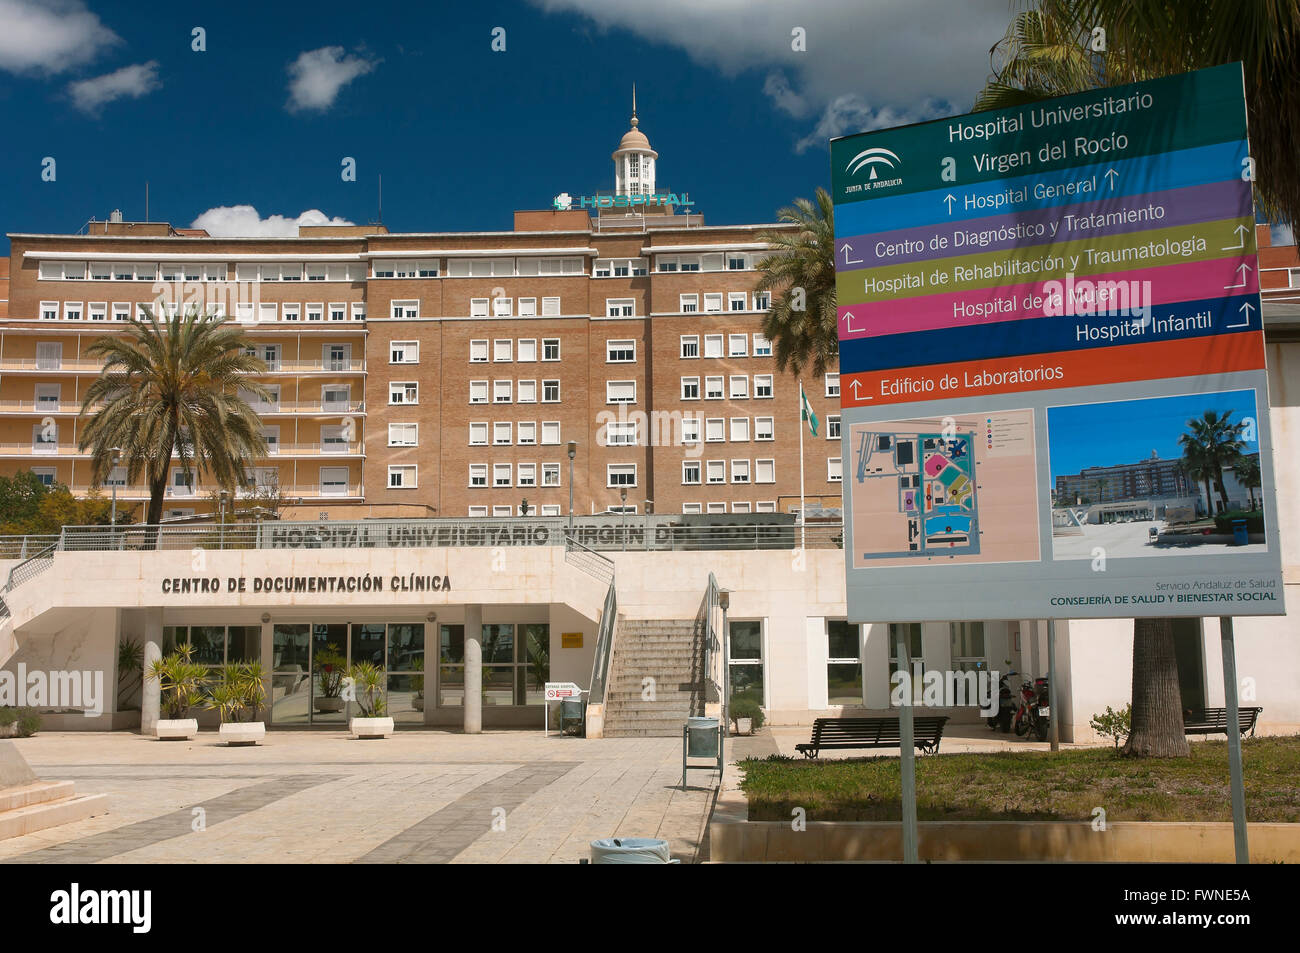 Ospedale Universitario Virgen del Rocio, Siviglia, regione dell'Andalusia, Spagna, Europa Foto Stock